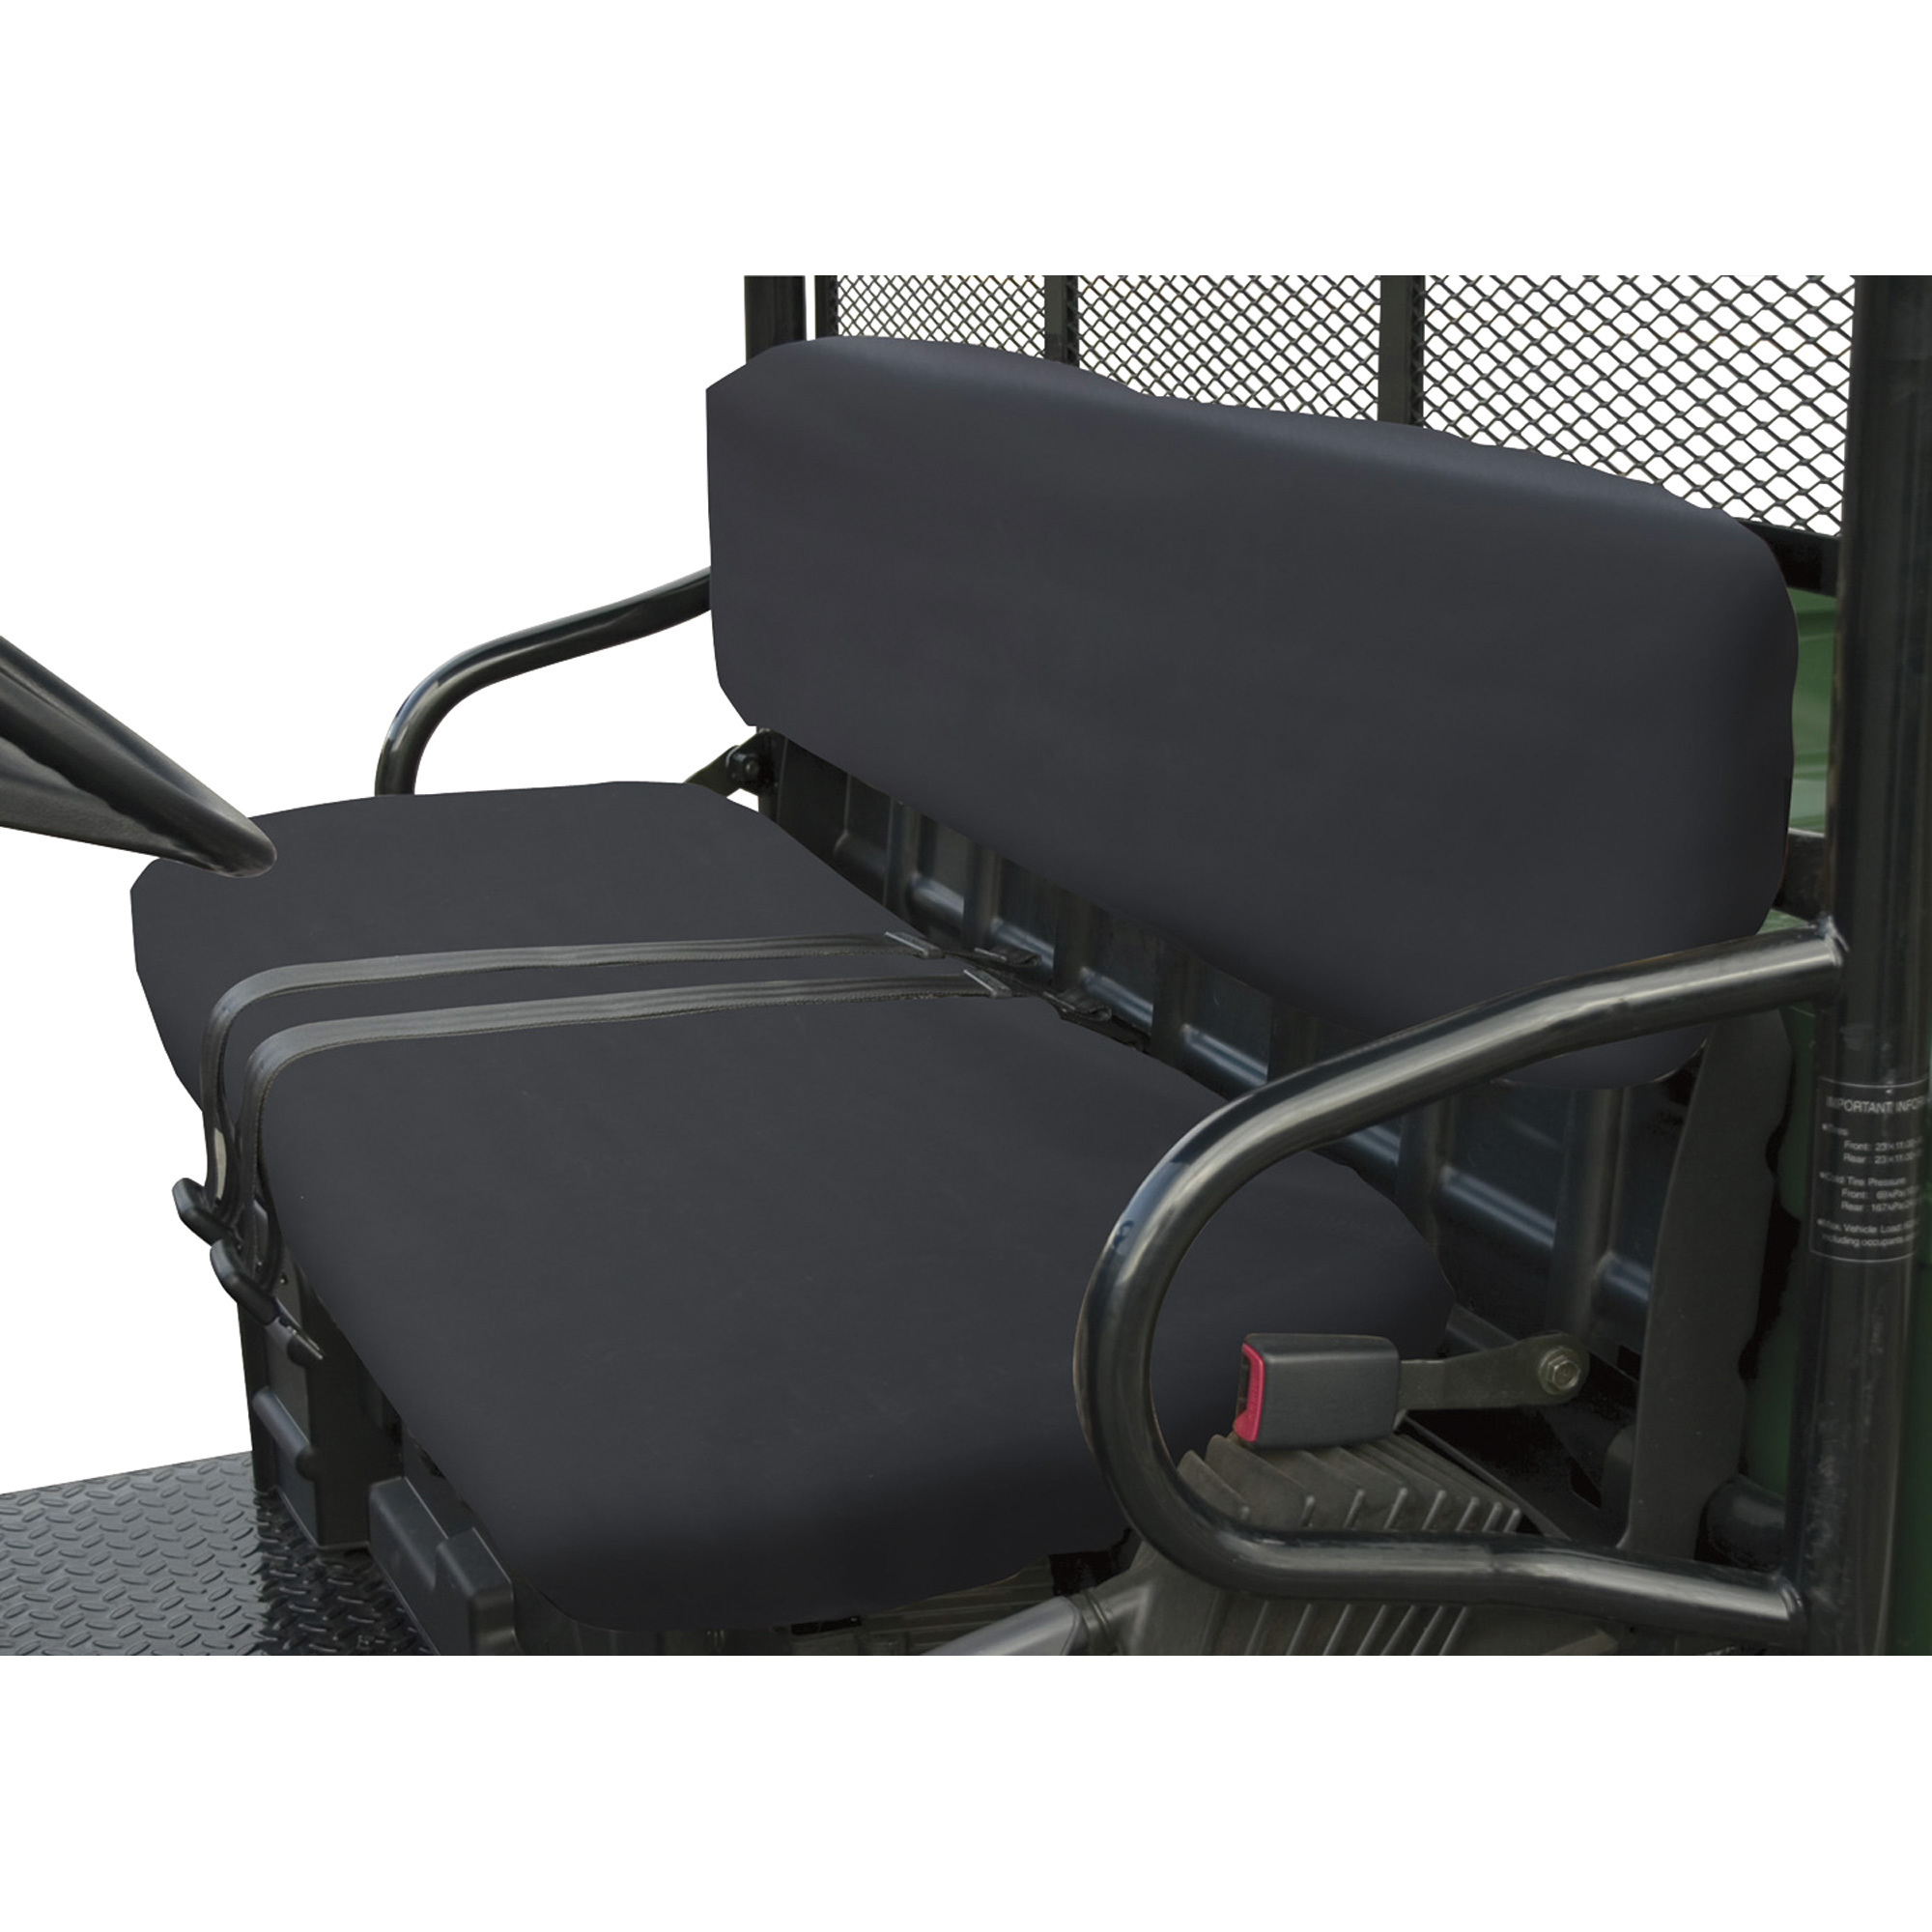 Classic Accessories QuadGear UTV Seat Cover, Black, For 2002-2008 Polaris Ranger Bench Seat, Model 78377